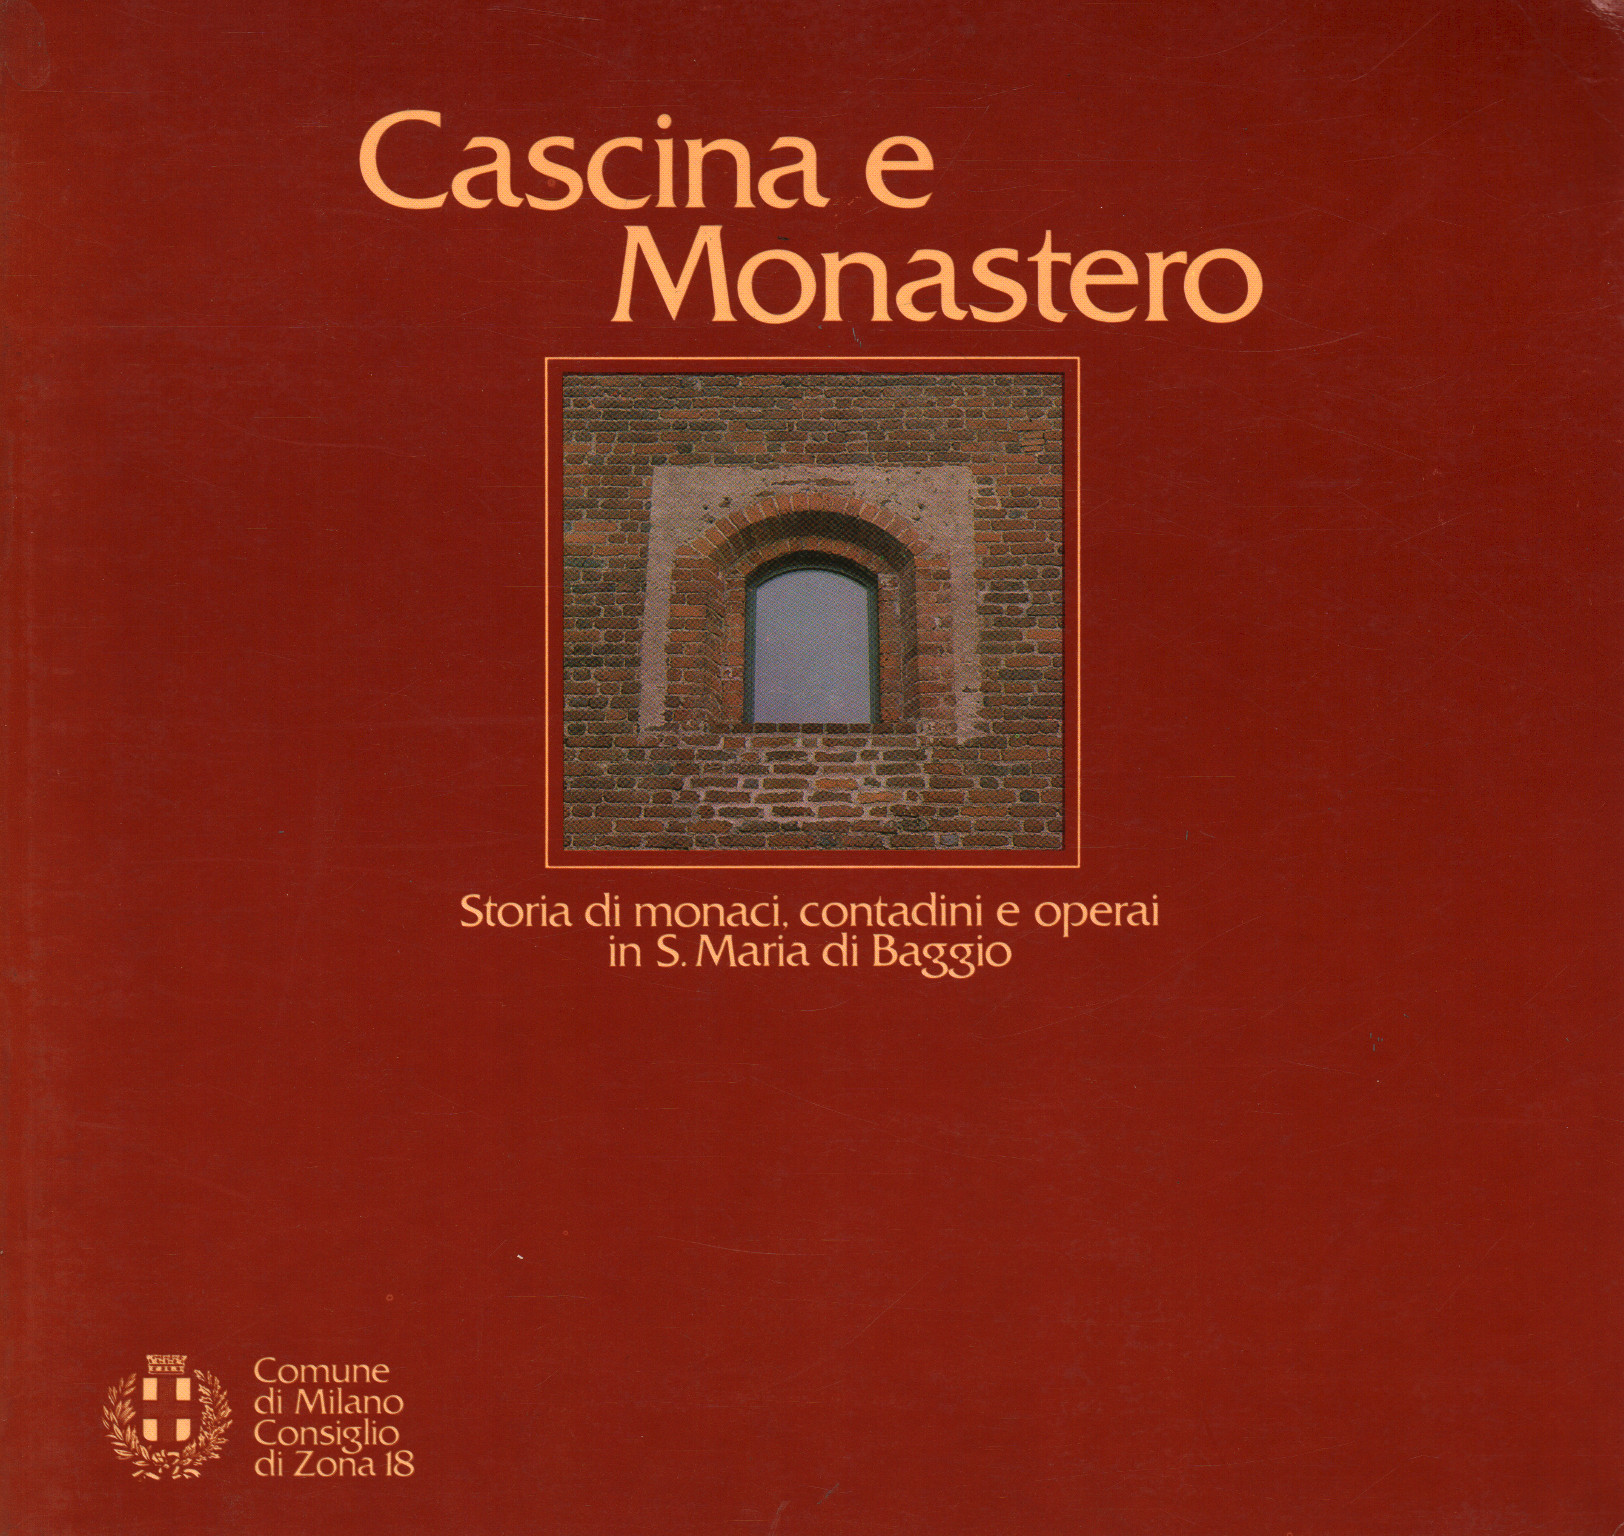 Cascina e Monastero, s.a.